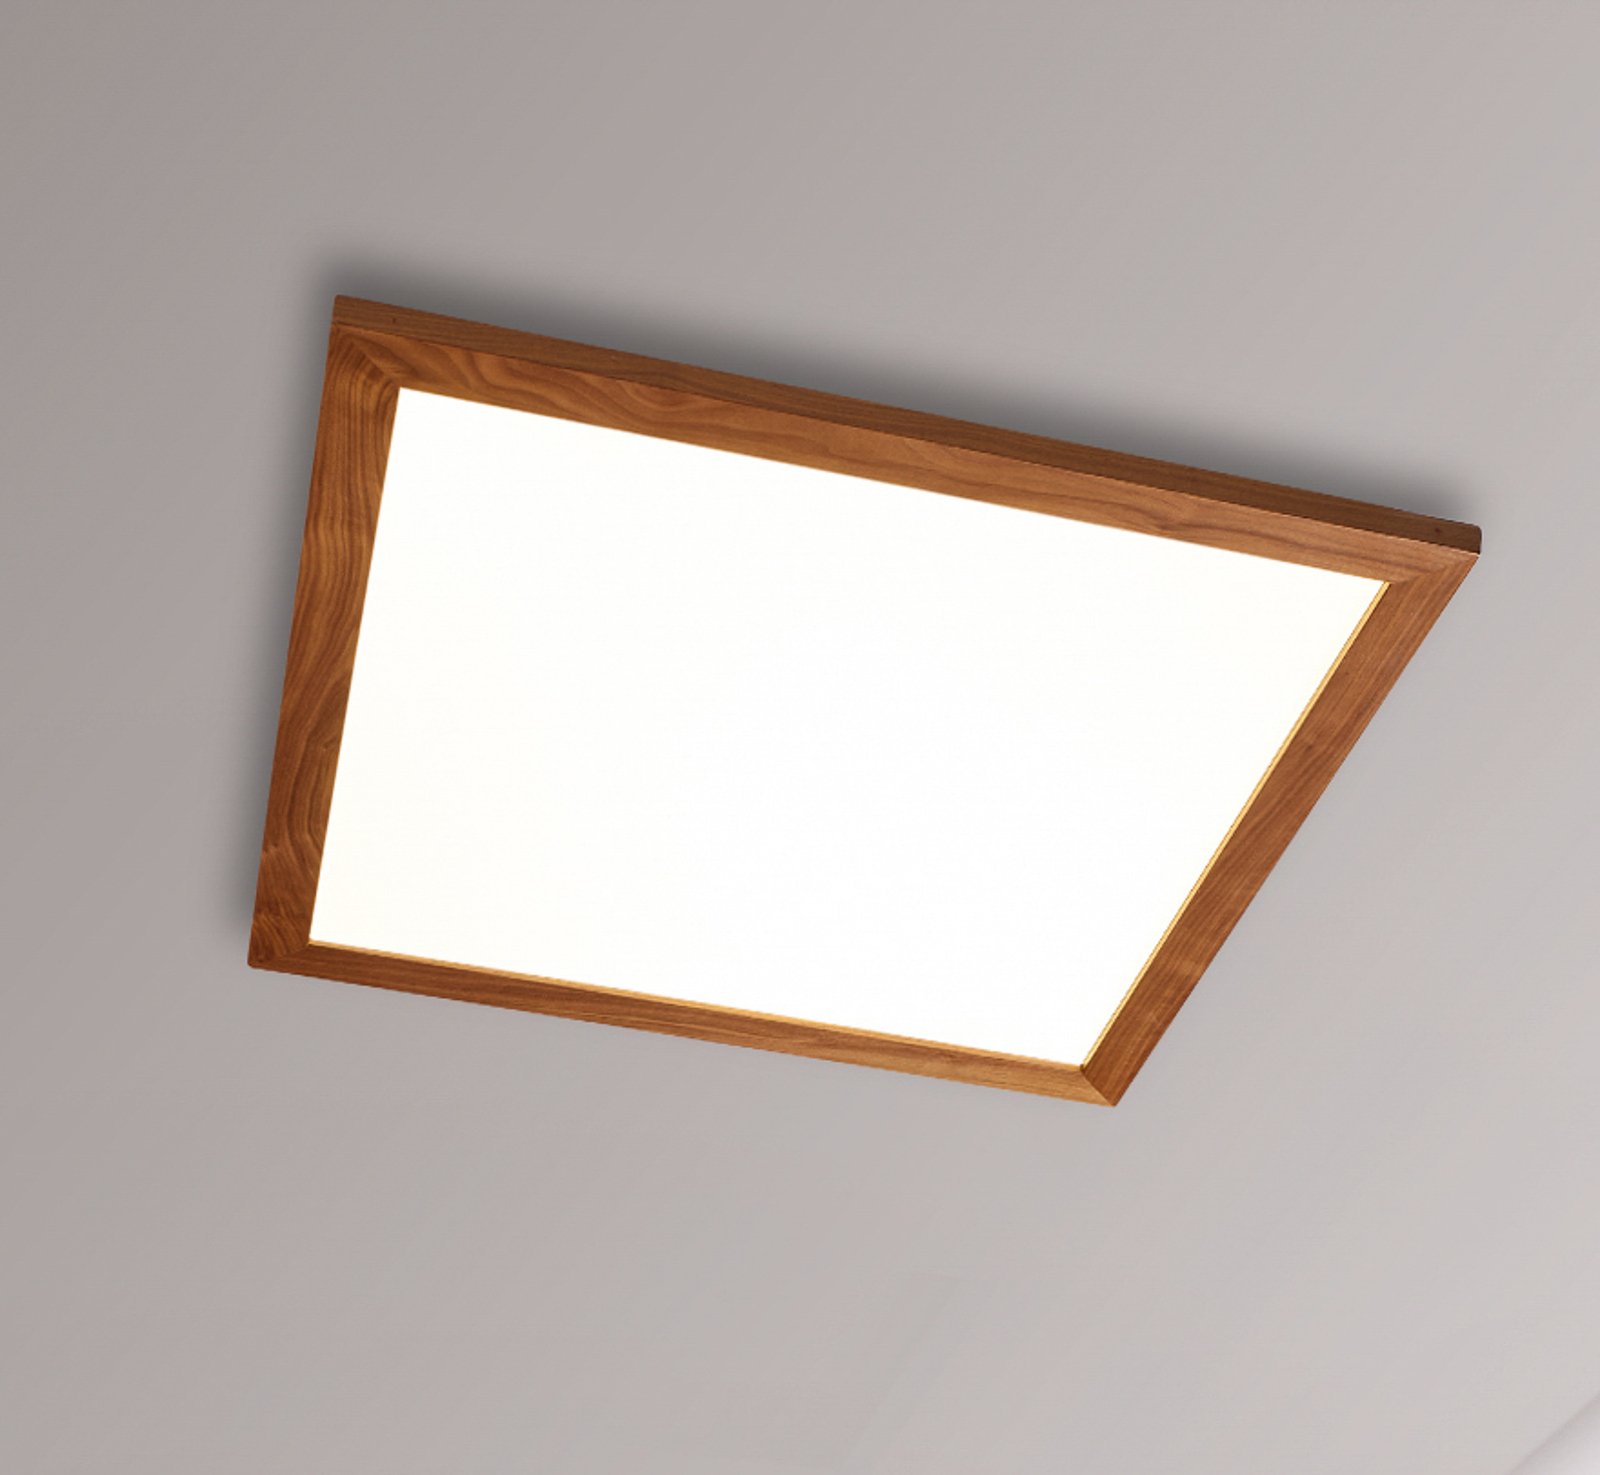 Quitani Aurinor LED-panel, valnød, 68 cm